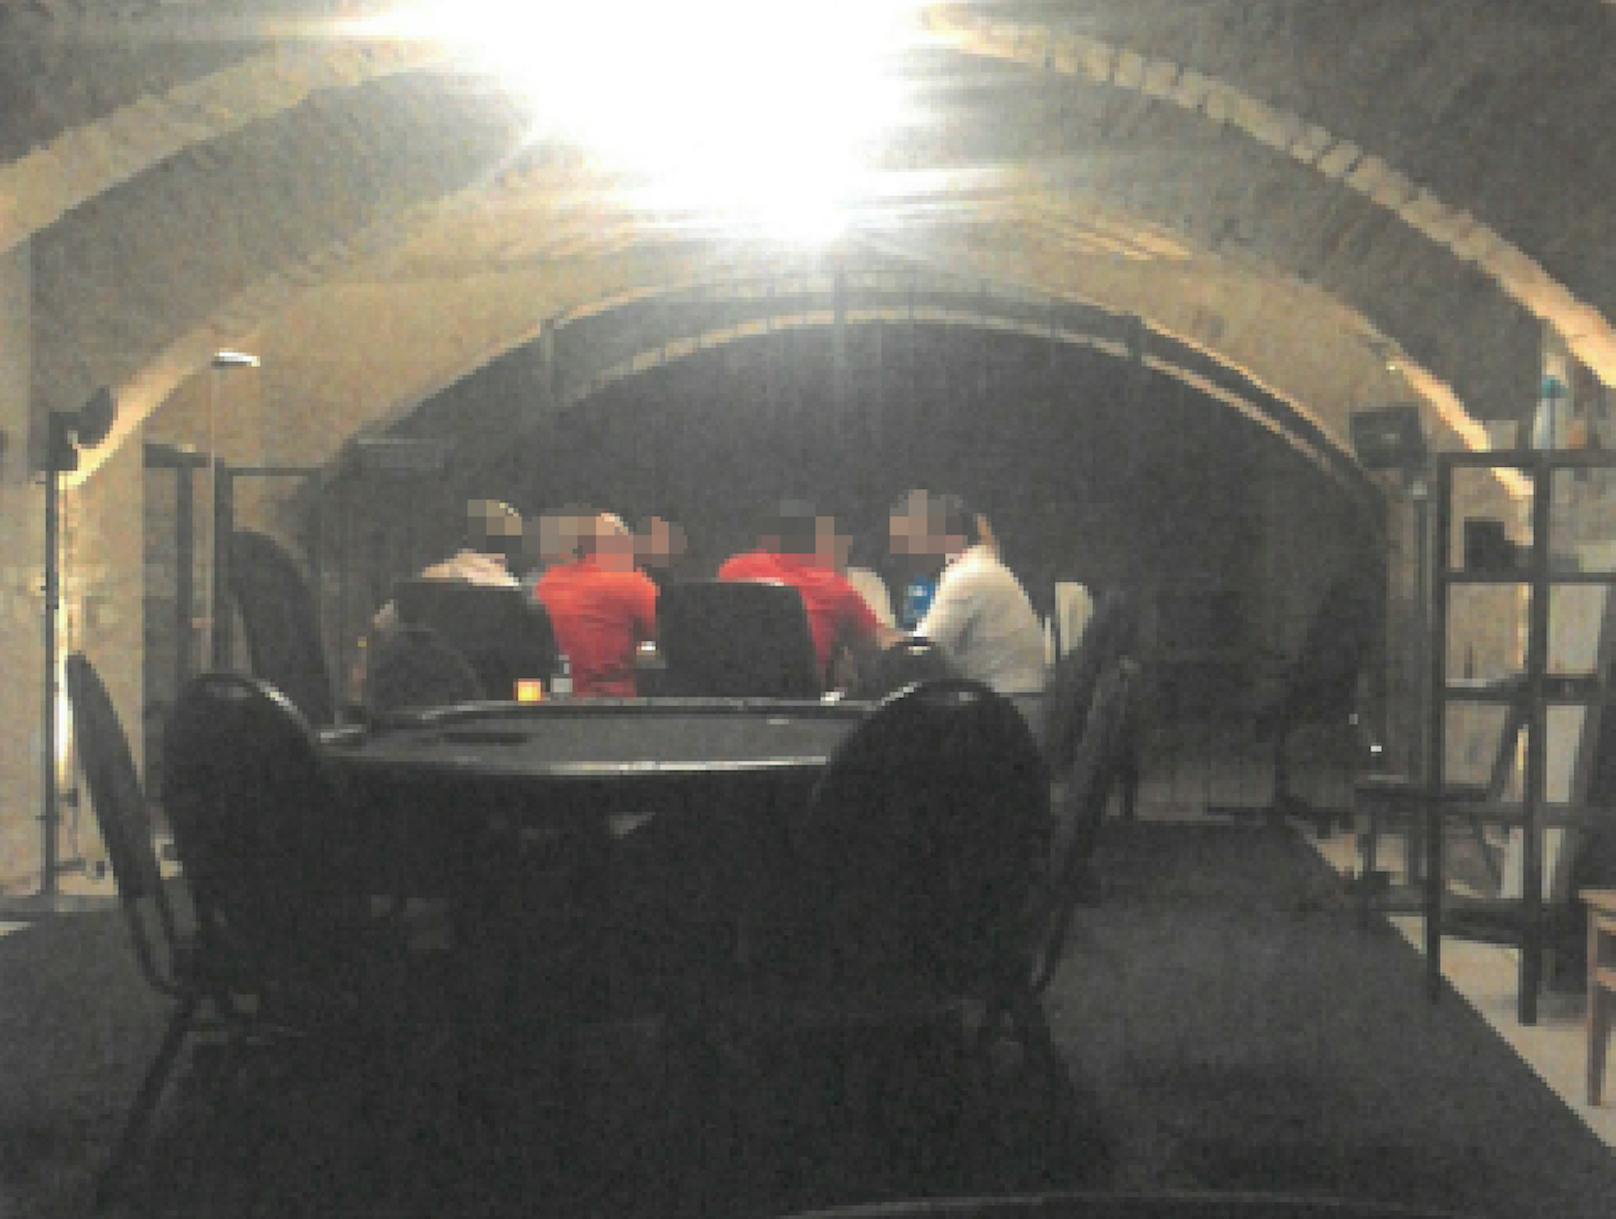 In einem Wohnhaus-Keller in Wien-Landstraße fanden illegale Pokerrunden statt. Der Pokerkeller war auch ein Drogenumschlagplatz. Nach einer Razzia von Finanzpolizei und LPD Wien heißt es nun "game over".